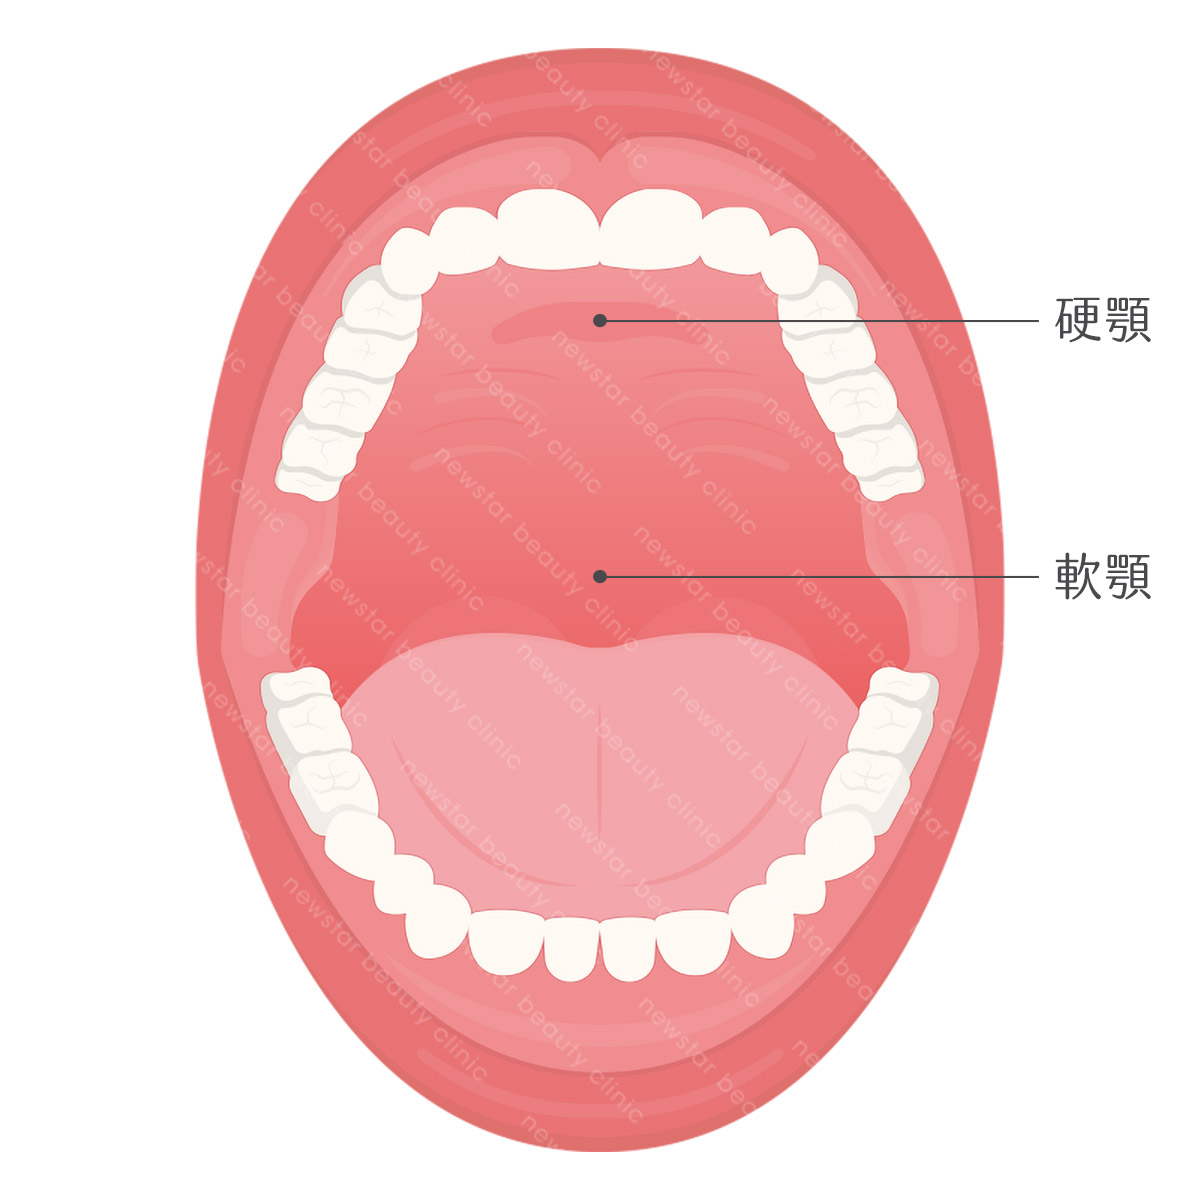 軟硬顎、扁桃腺、懸壅垂位置圖